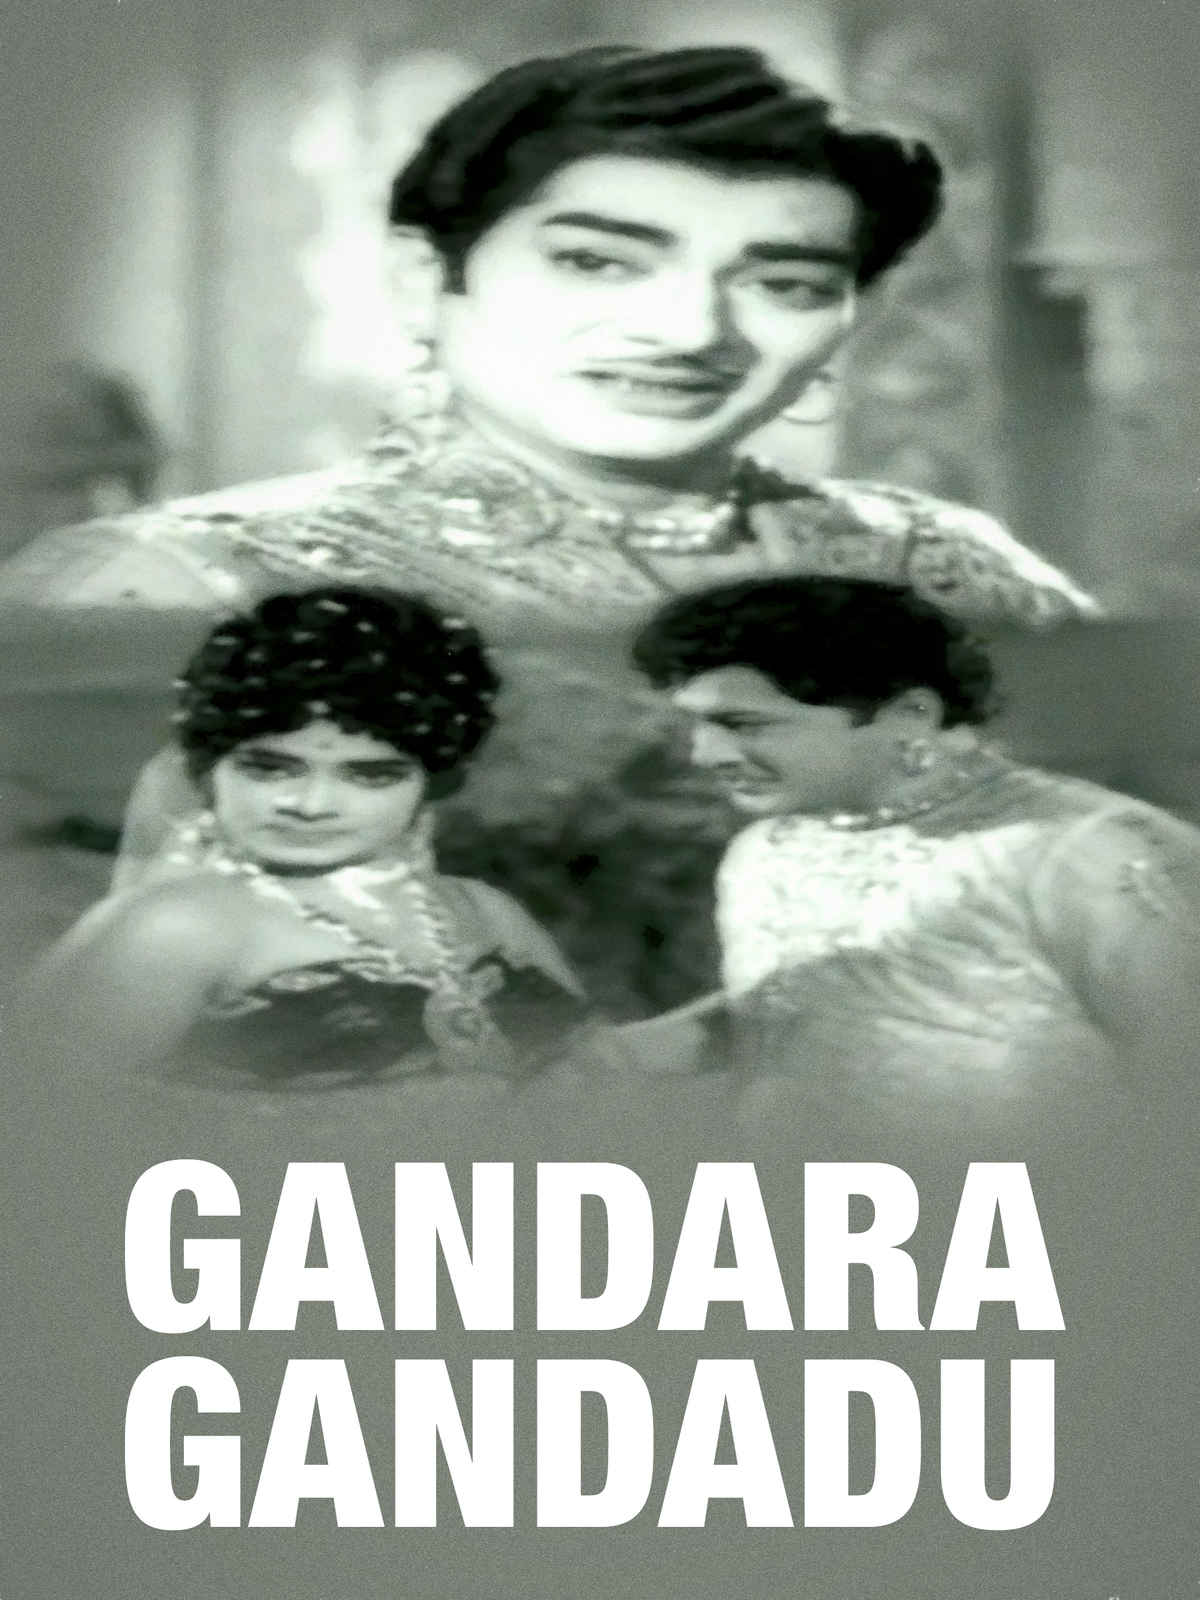 Gandara Gandadu